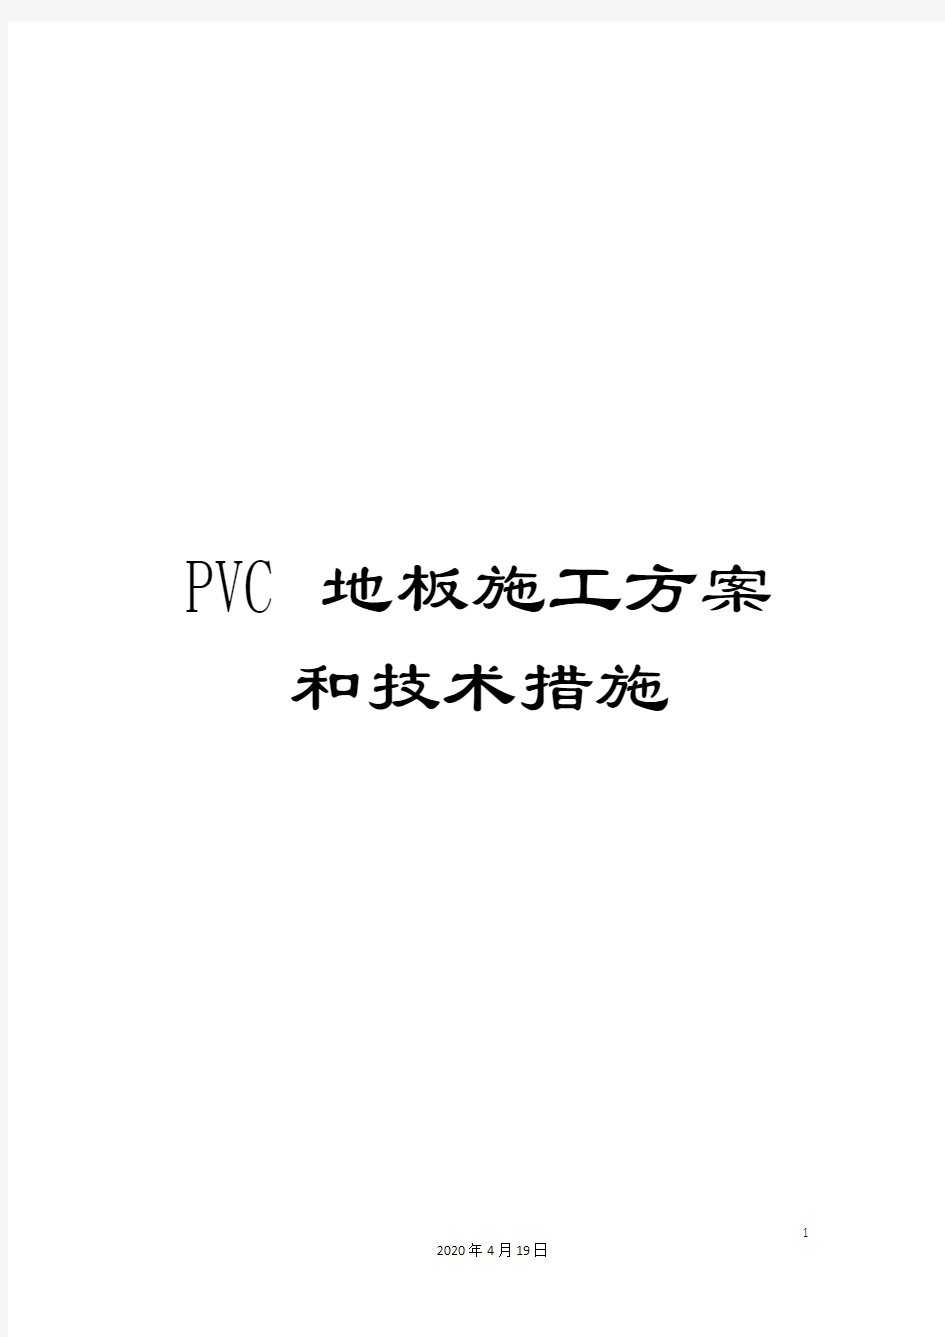 PVC地板施工方案和技术措施